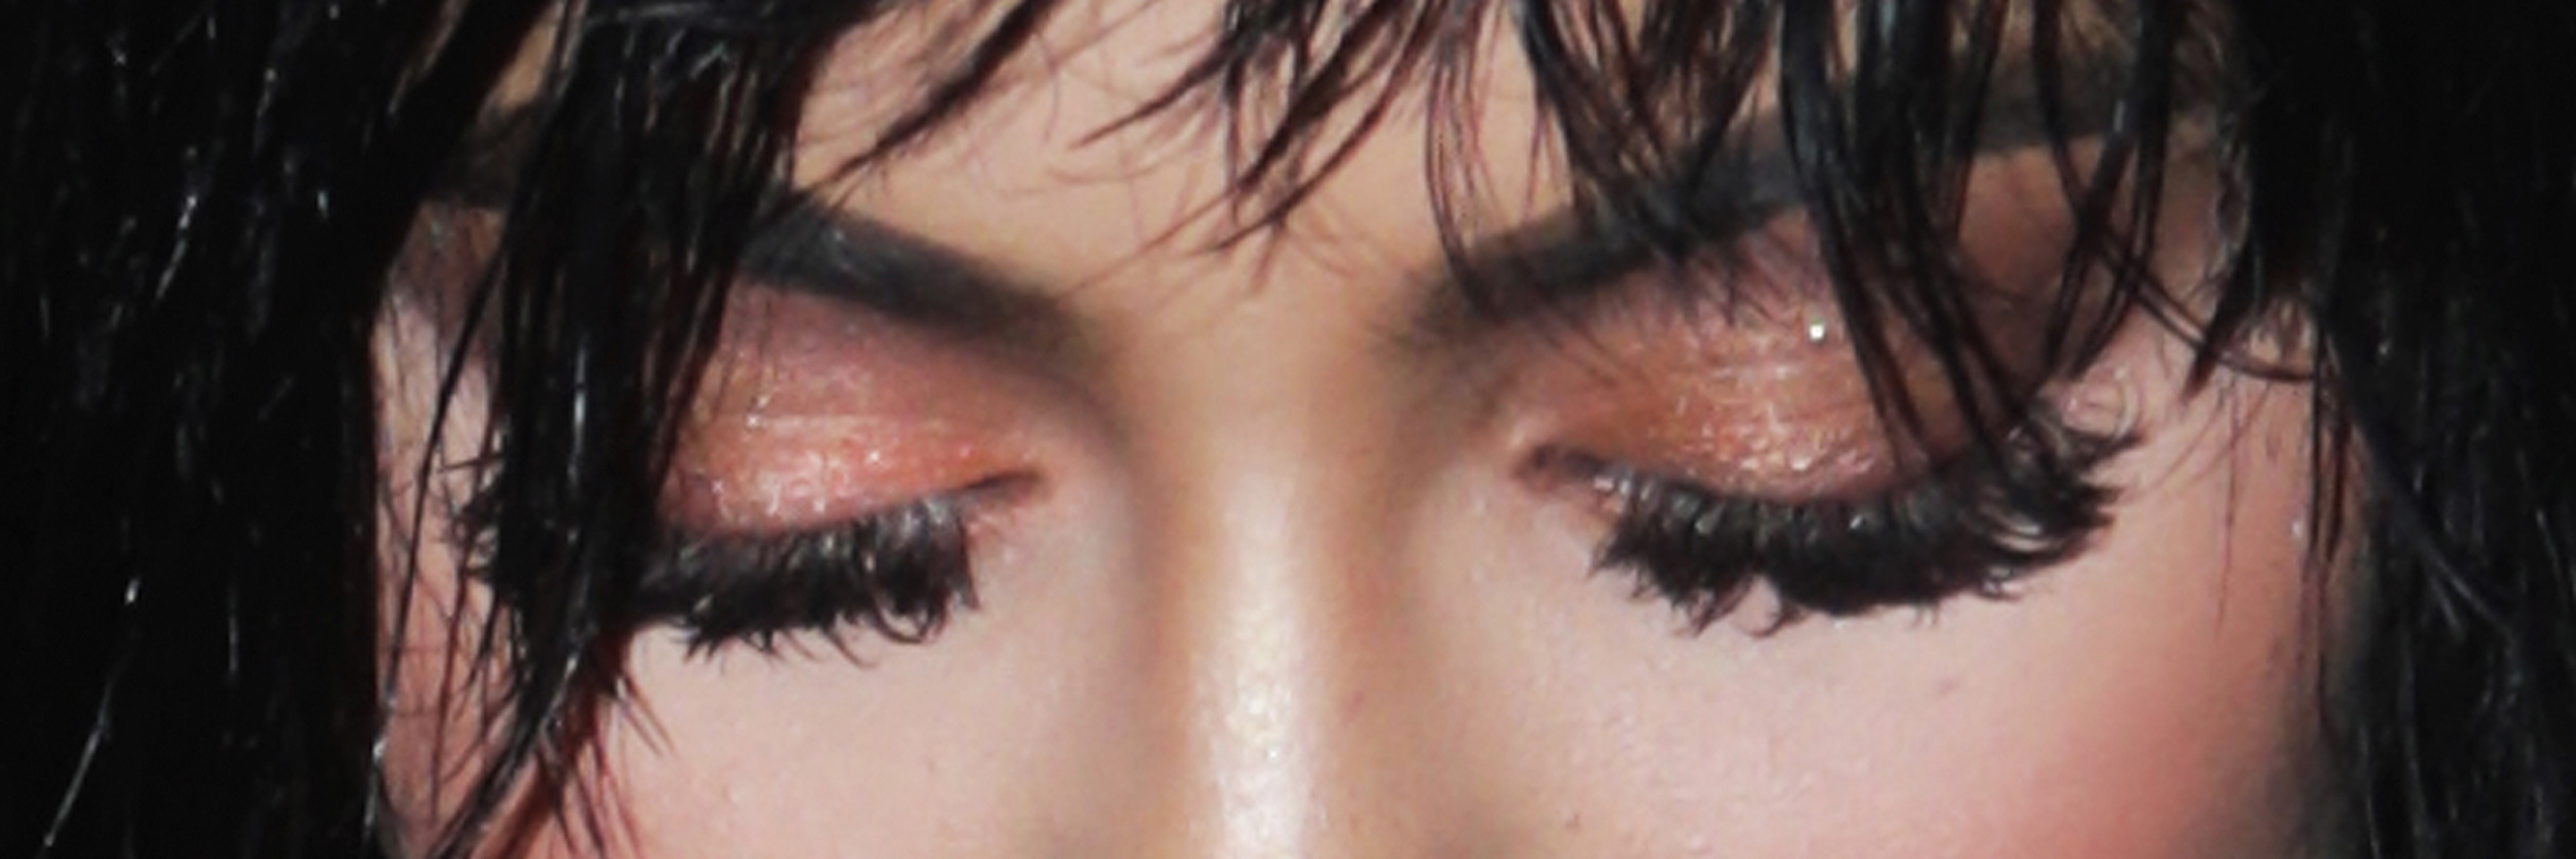 Косметика Kylie Jenner: отзыв бьюти-редактора на хайлайтер, блеск для губ и карандаш для глаз 